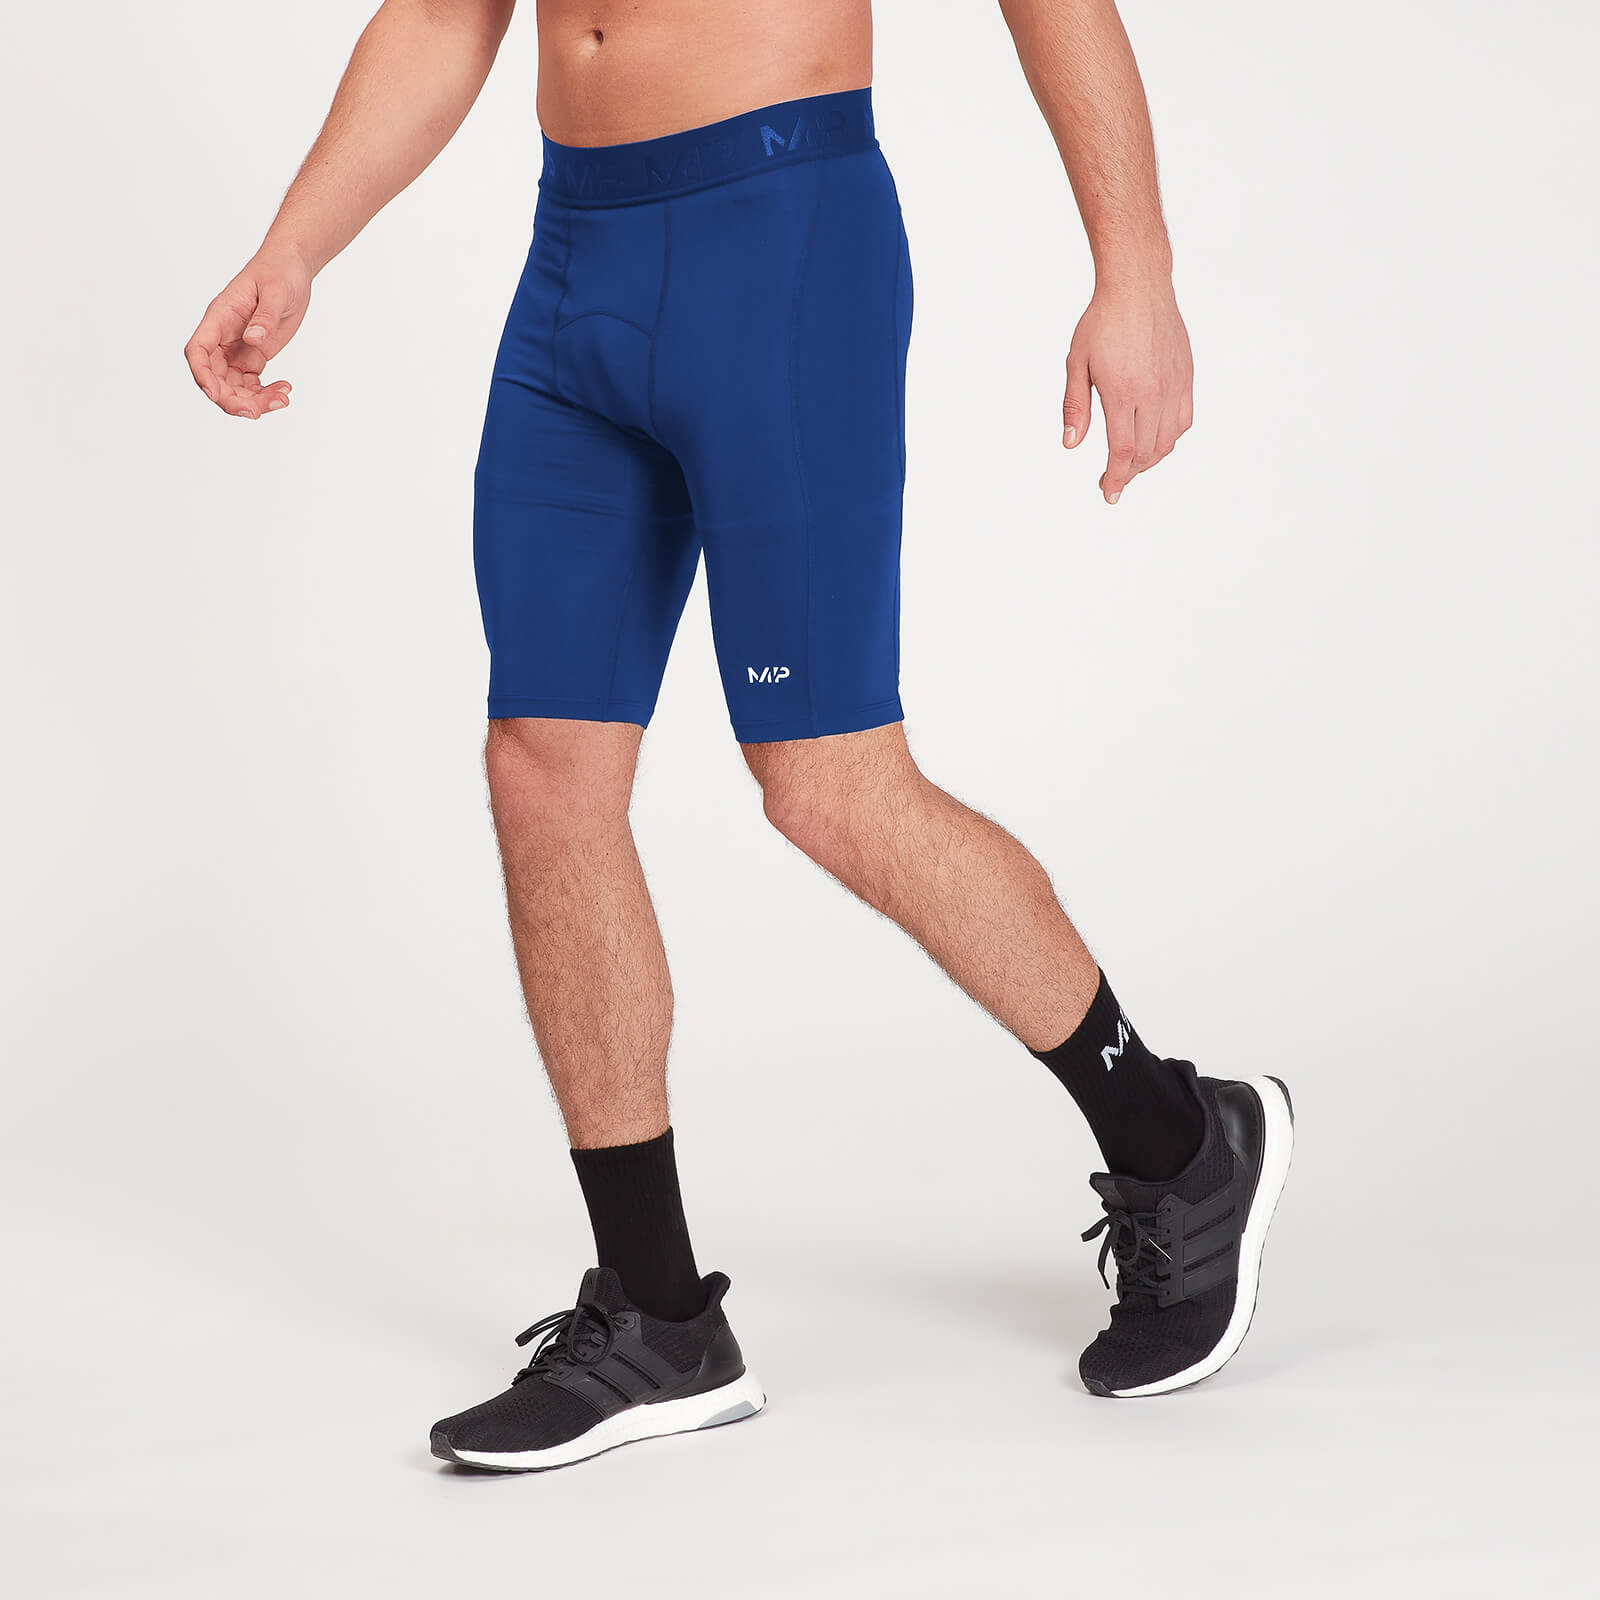 Pantalón corto interior de deporte de entrenamiento para hombre de MP - Azul intenso - L